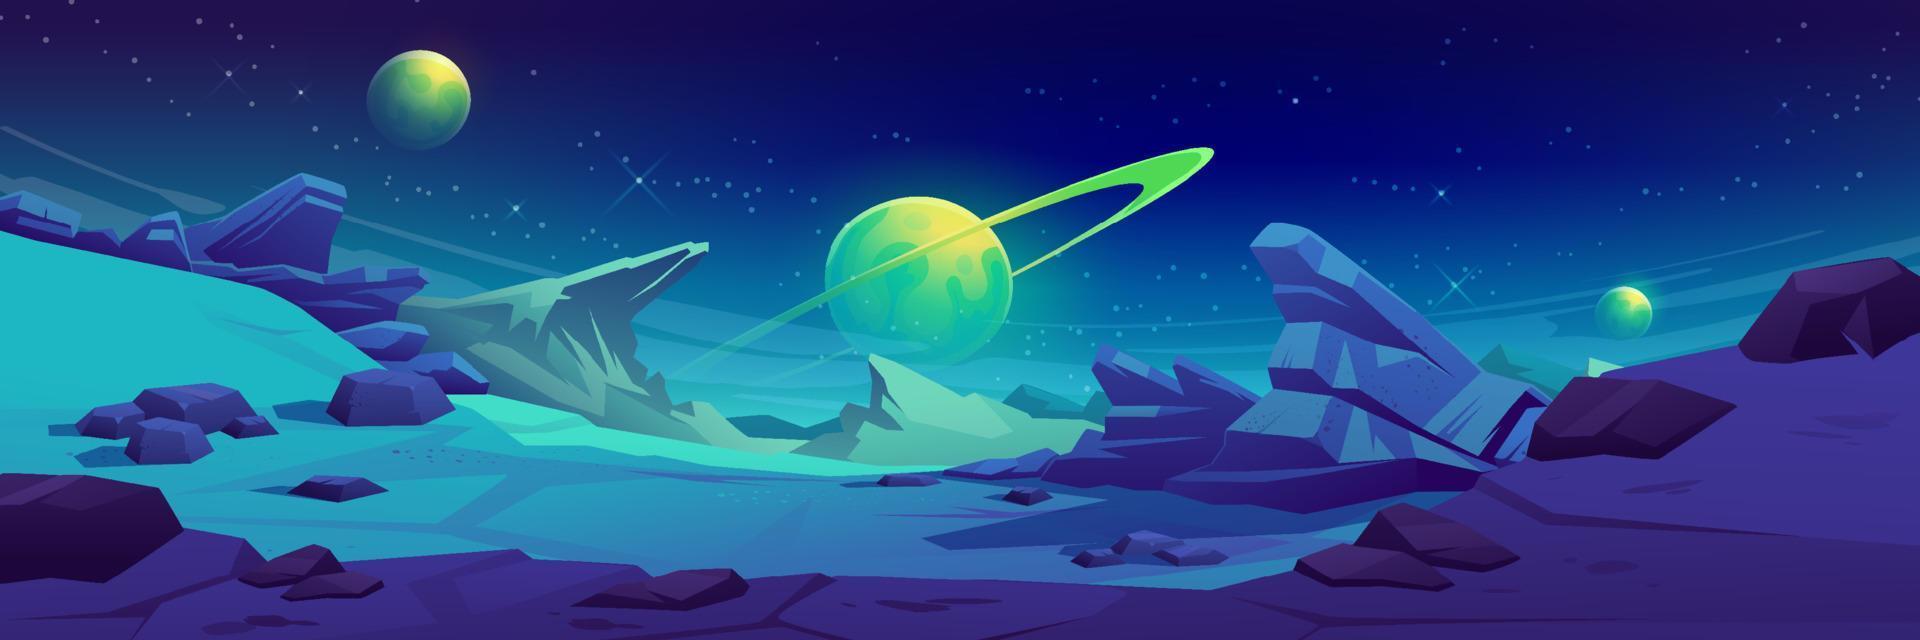 superficie de marte nocturno, paisaje de planeta alienígena vector